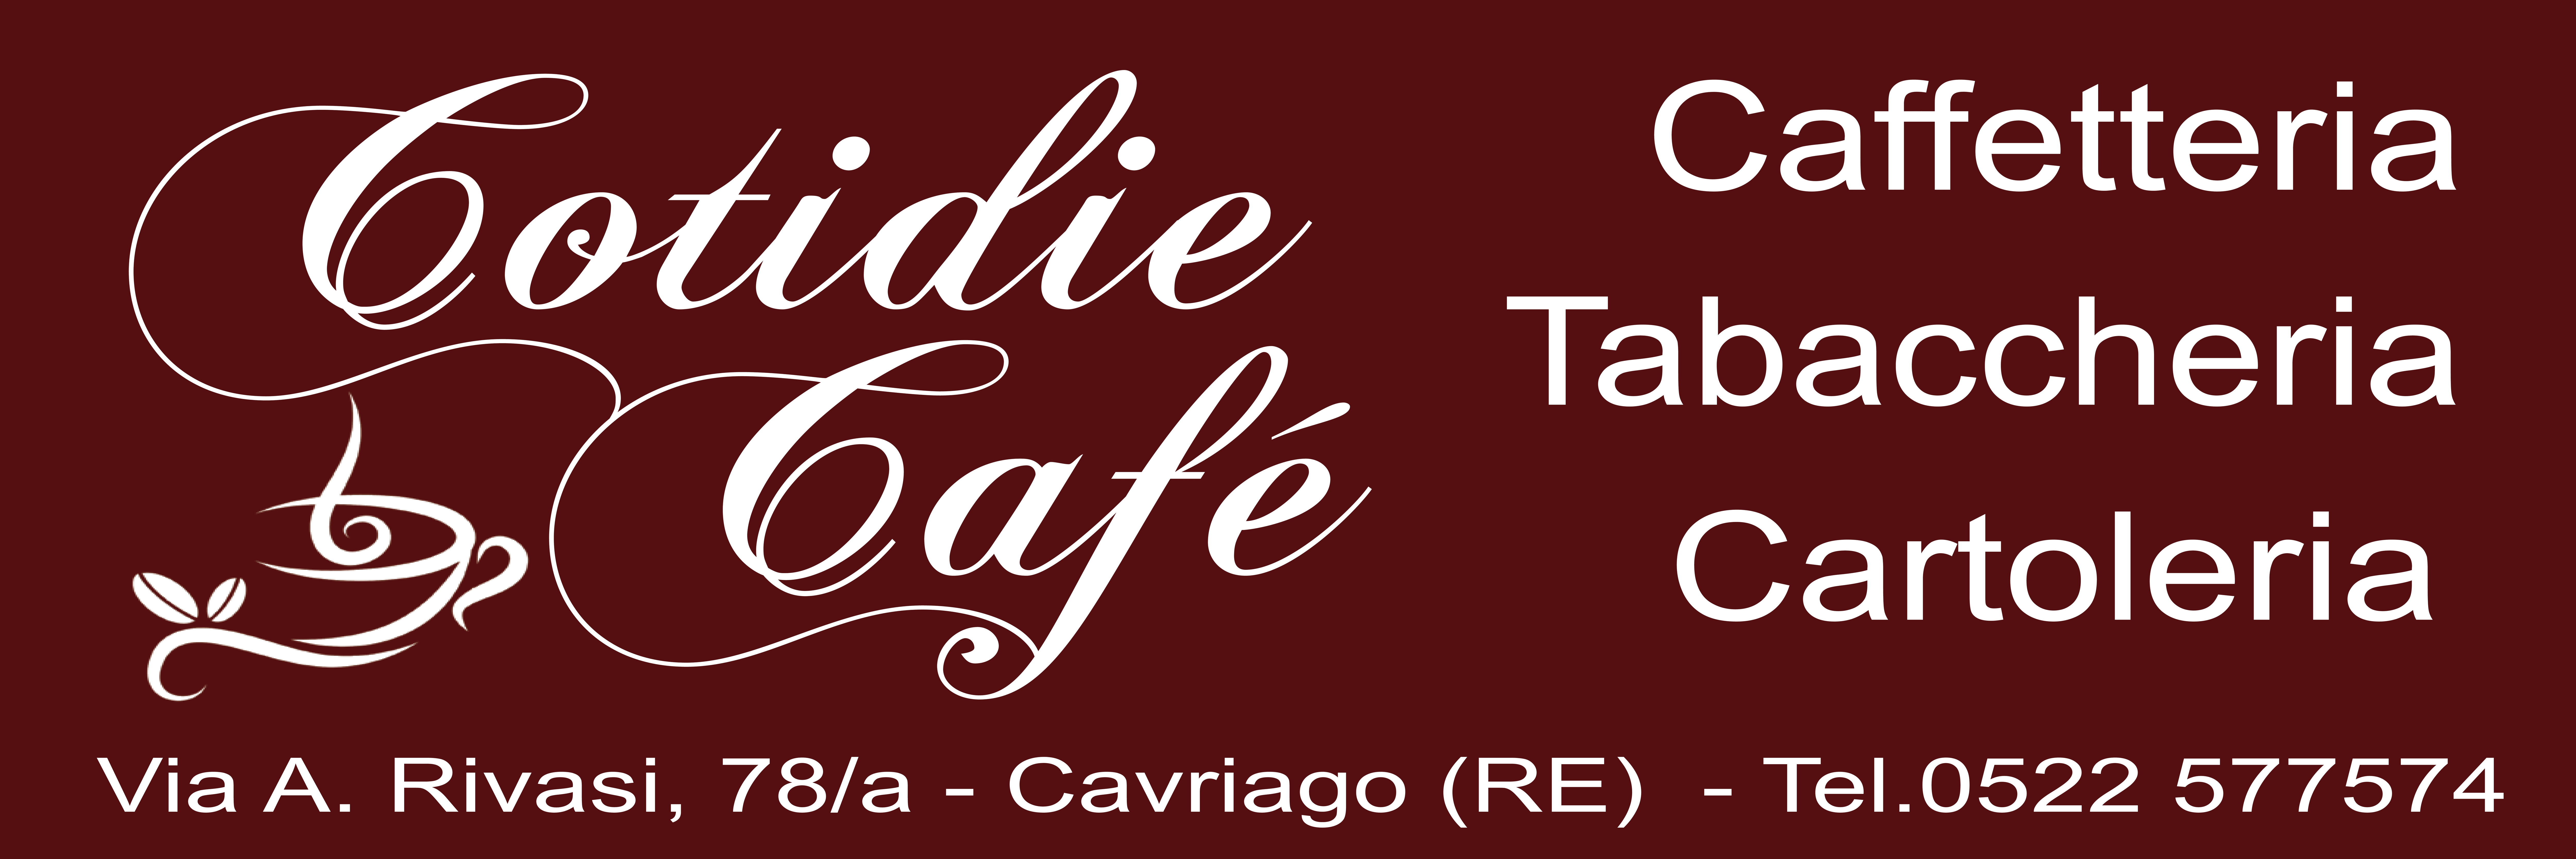 COTIDIE CAFE-001.jpg